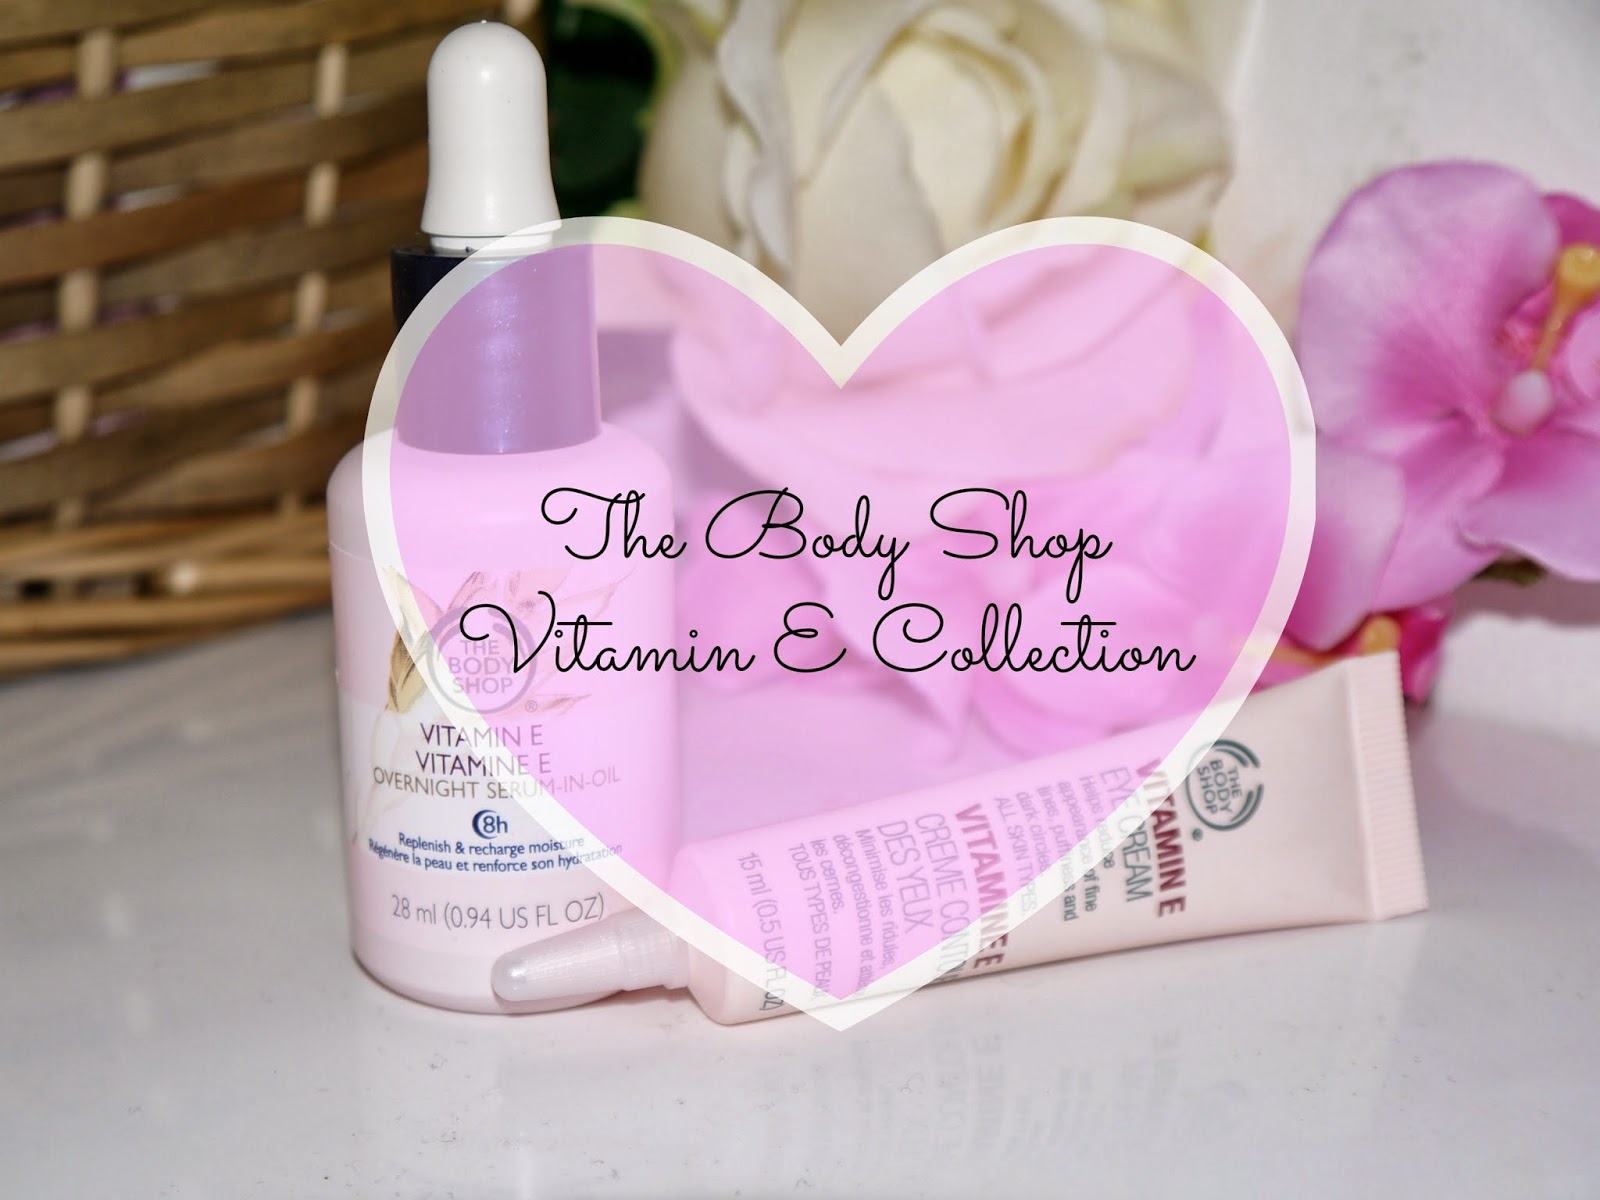 The Body Shop – Vitamin E Collection